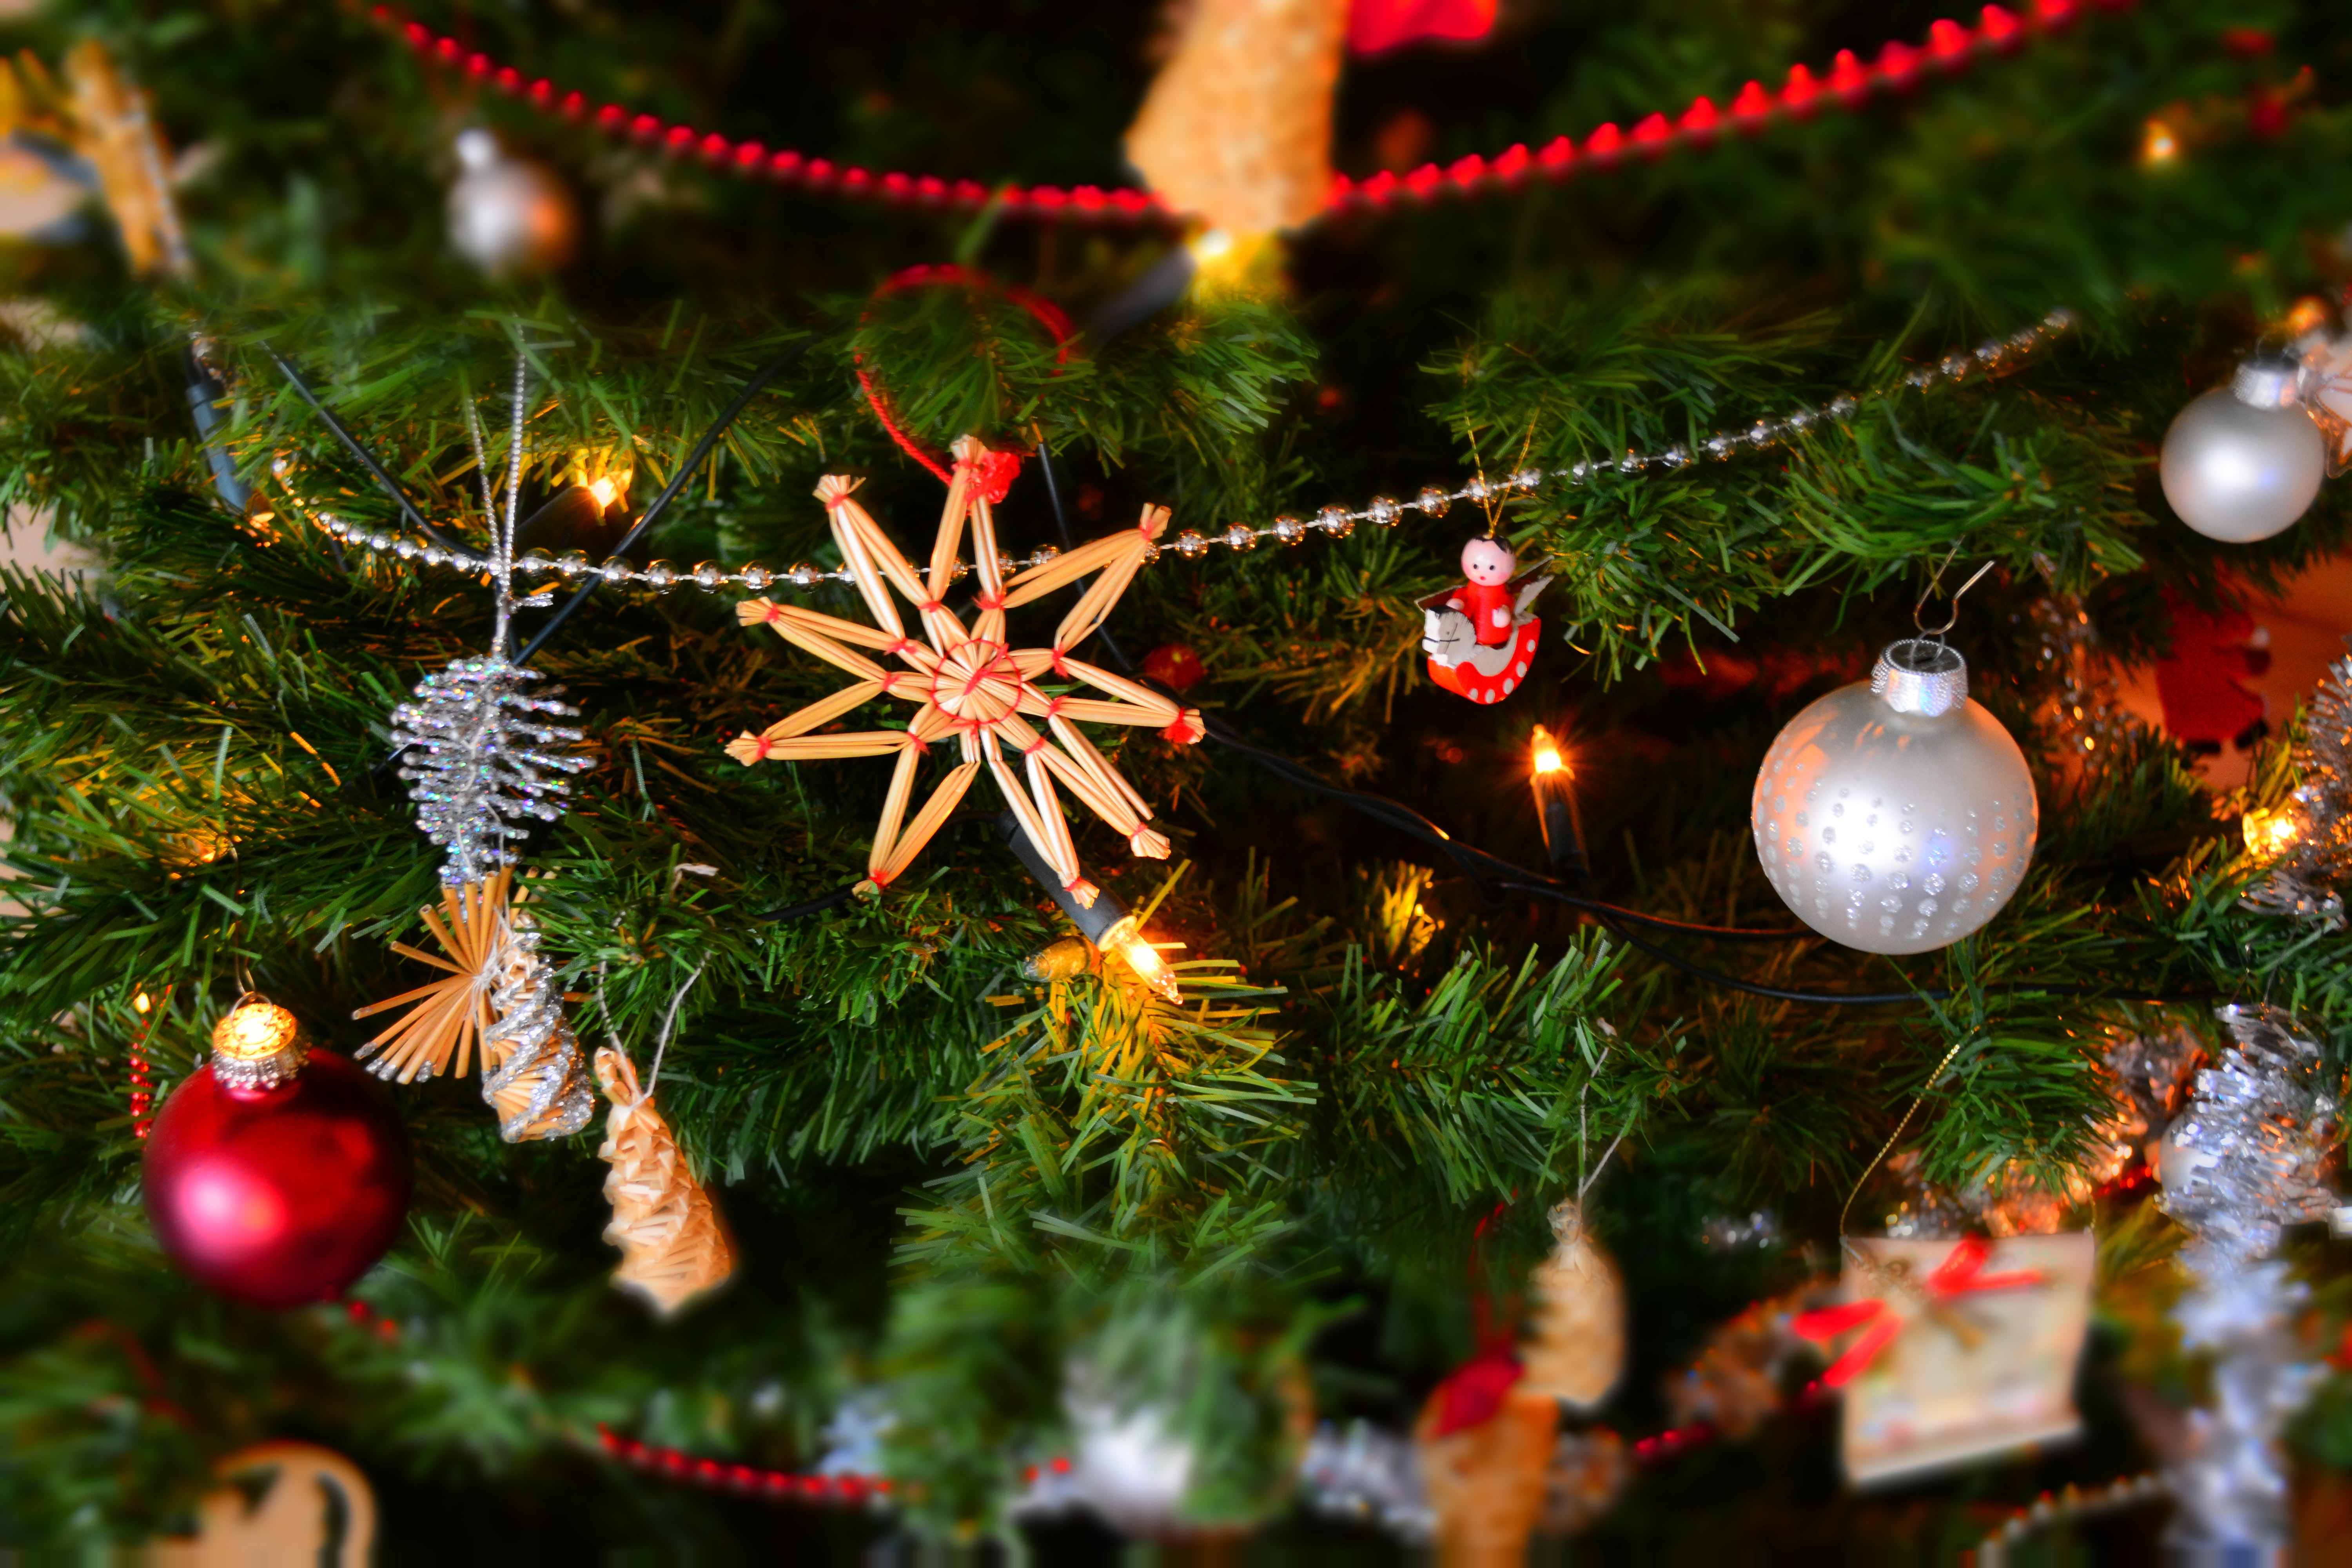 Nahaufnahme eines geschmückten Weihnachtsbaums